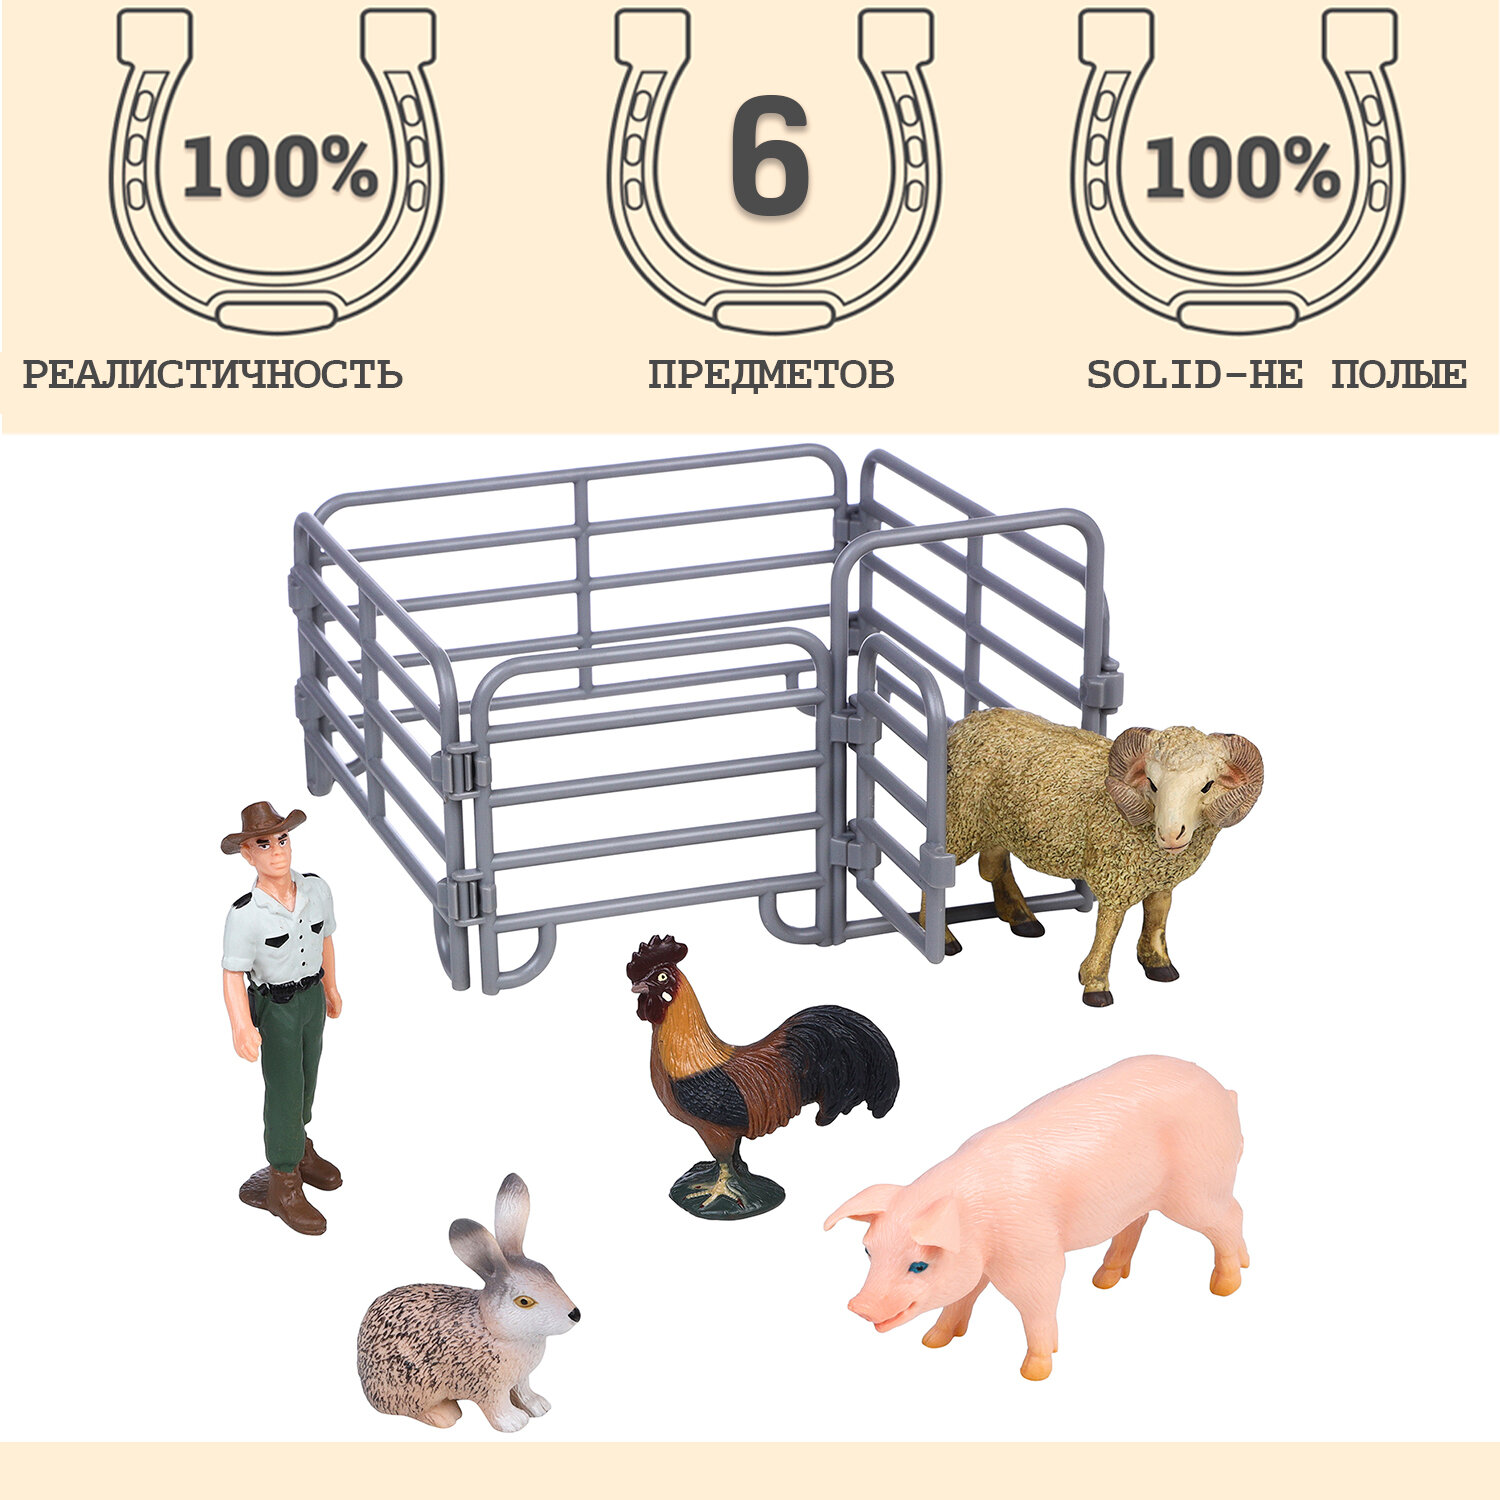 Фигурки животных серии "На ферме": баран, кролик, петух, свинья, рейнджер, ограждение (набор из 6 предметов)